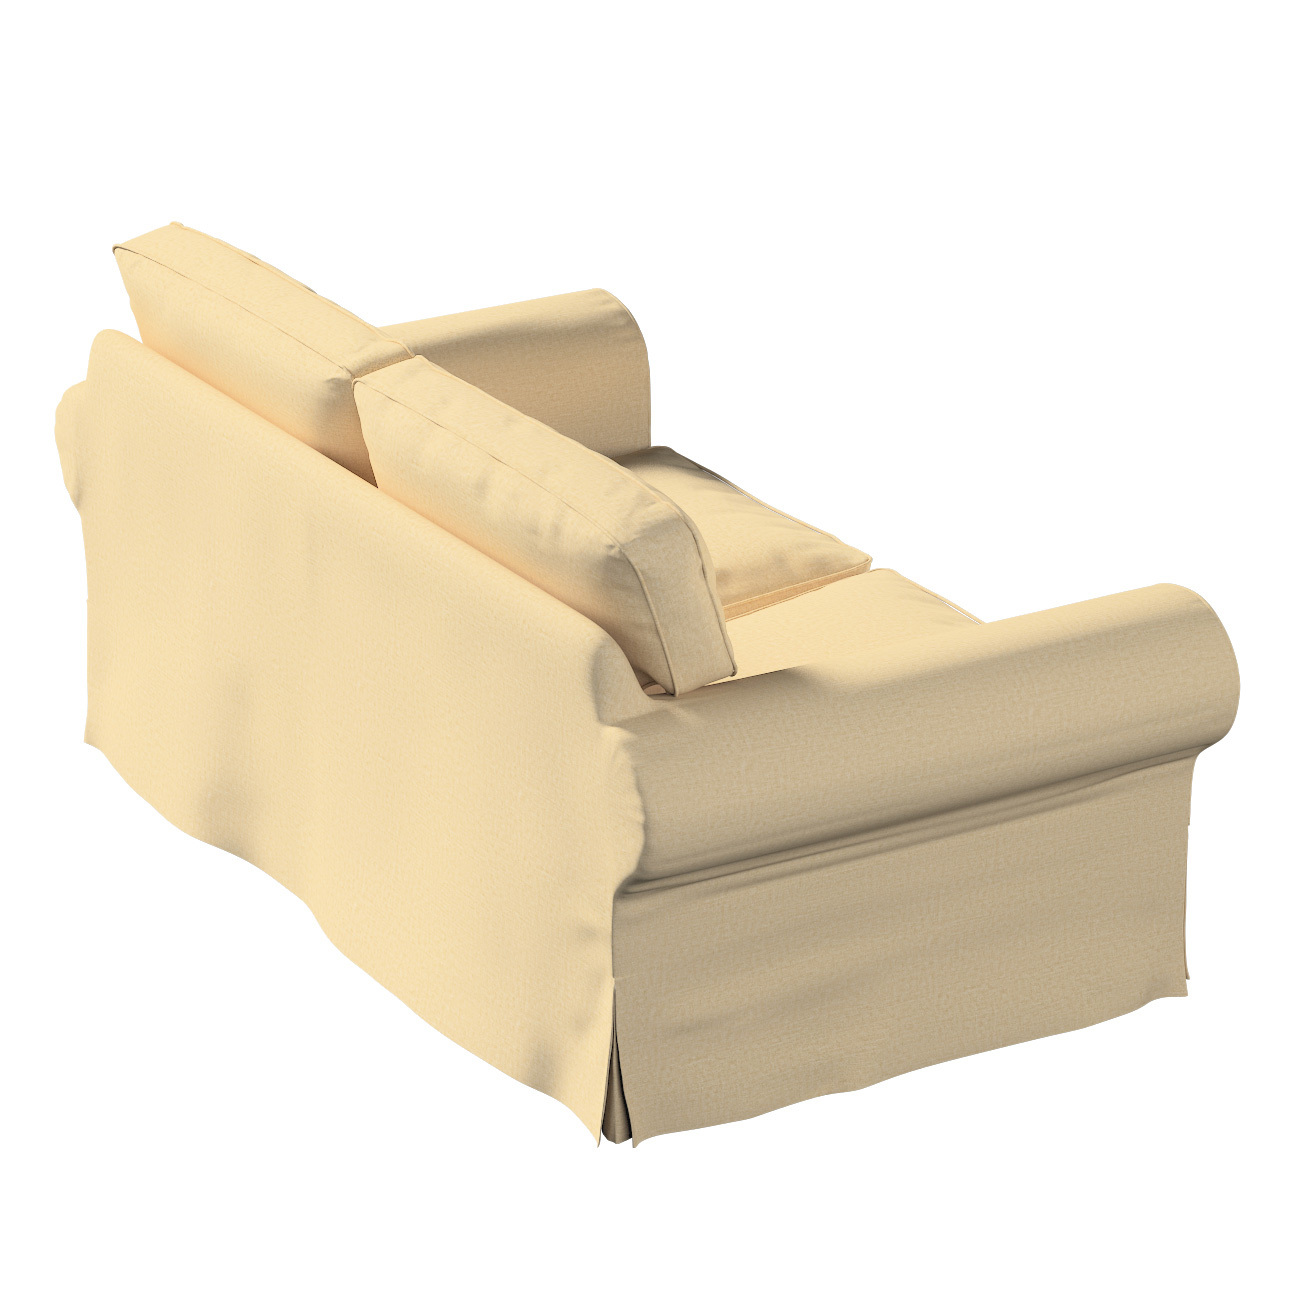 Bezug für Ektorp 2-Sitzer Sofa nicht ausklappbar, sandfarben, Sofabezug für günstig online kaufen